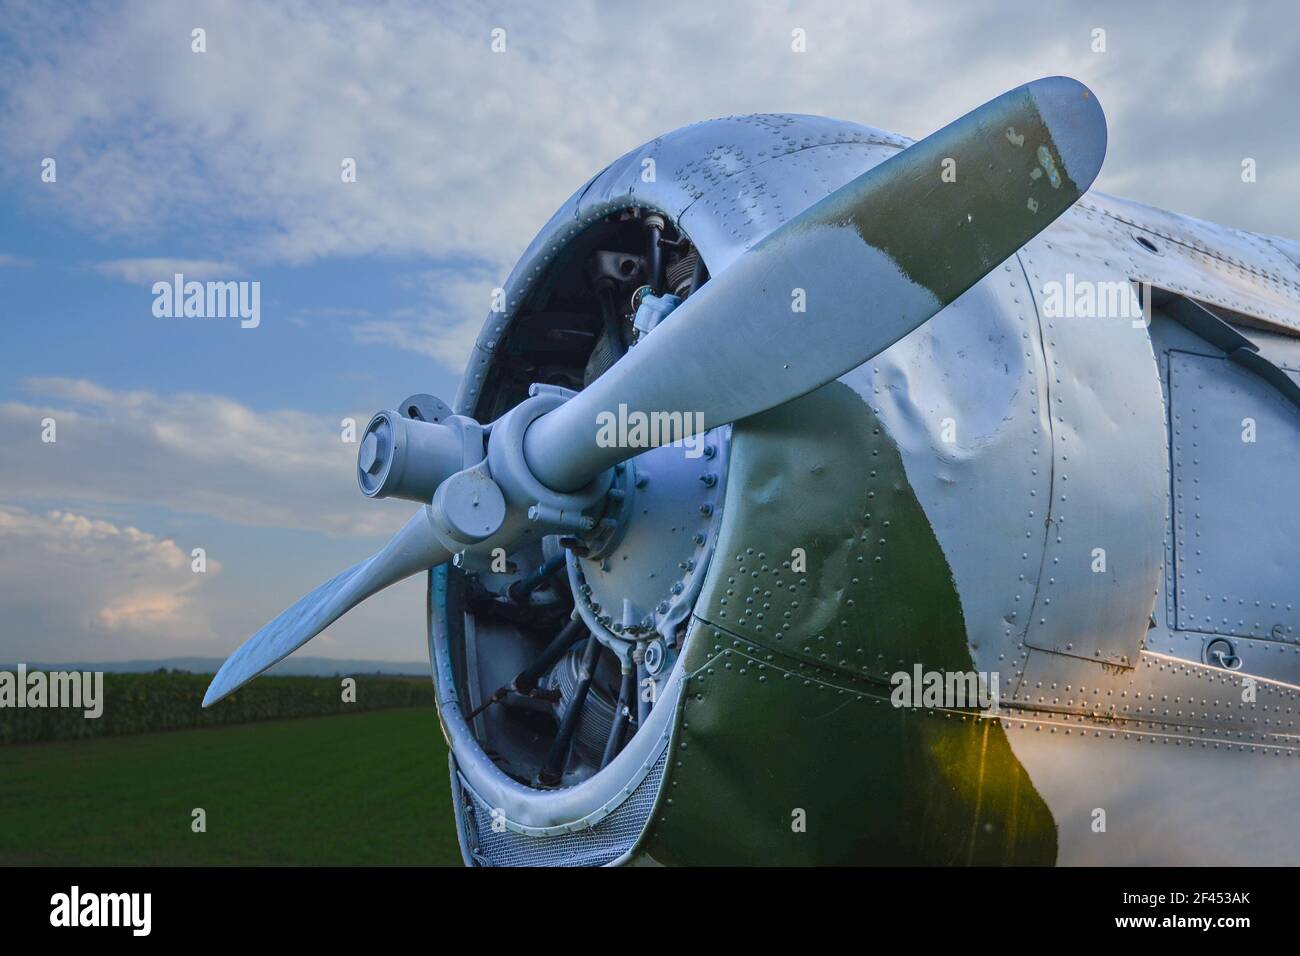 Un moteur et une hélice d'une ancienne Seconde Guerre mondiale avion exposé à l'extérieur Banque D'Images